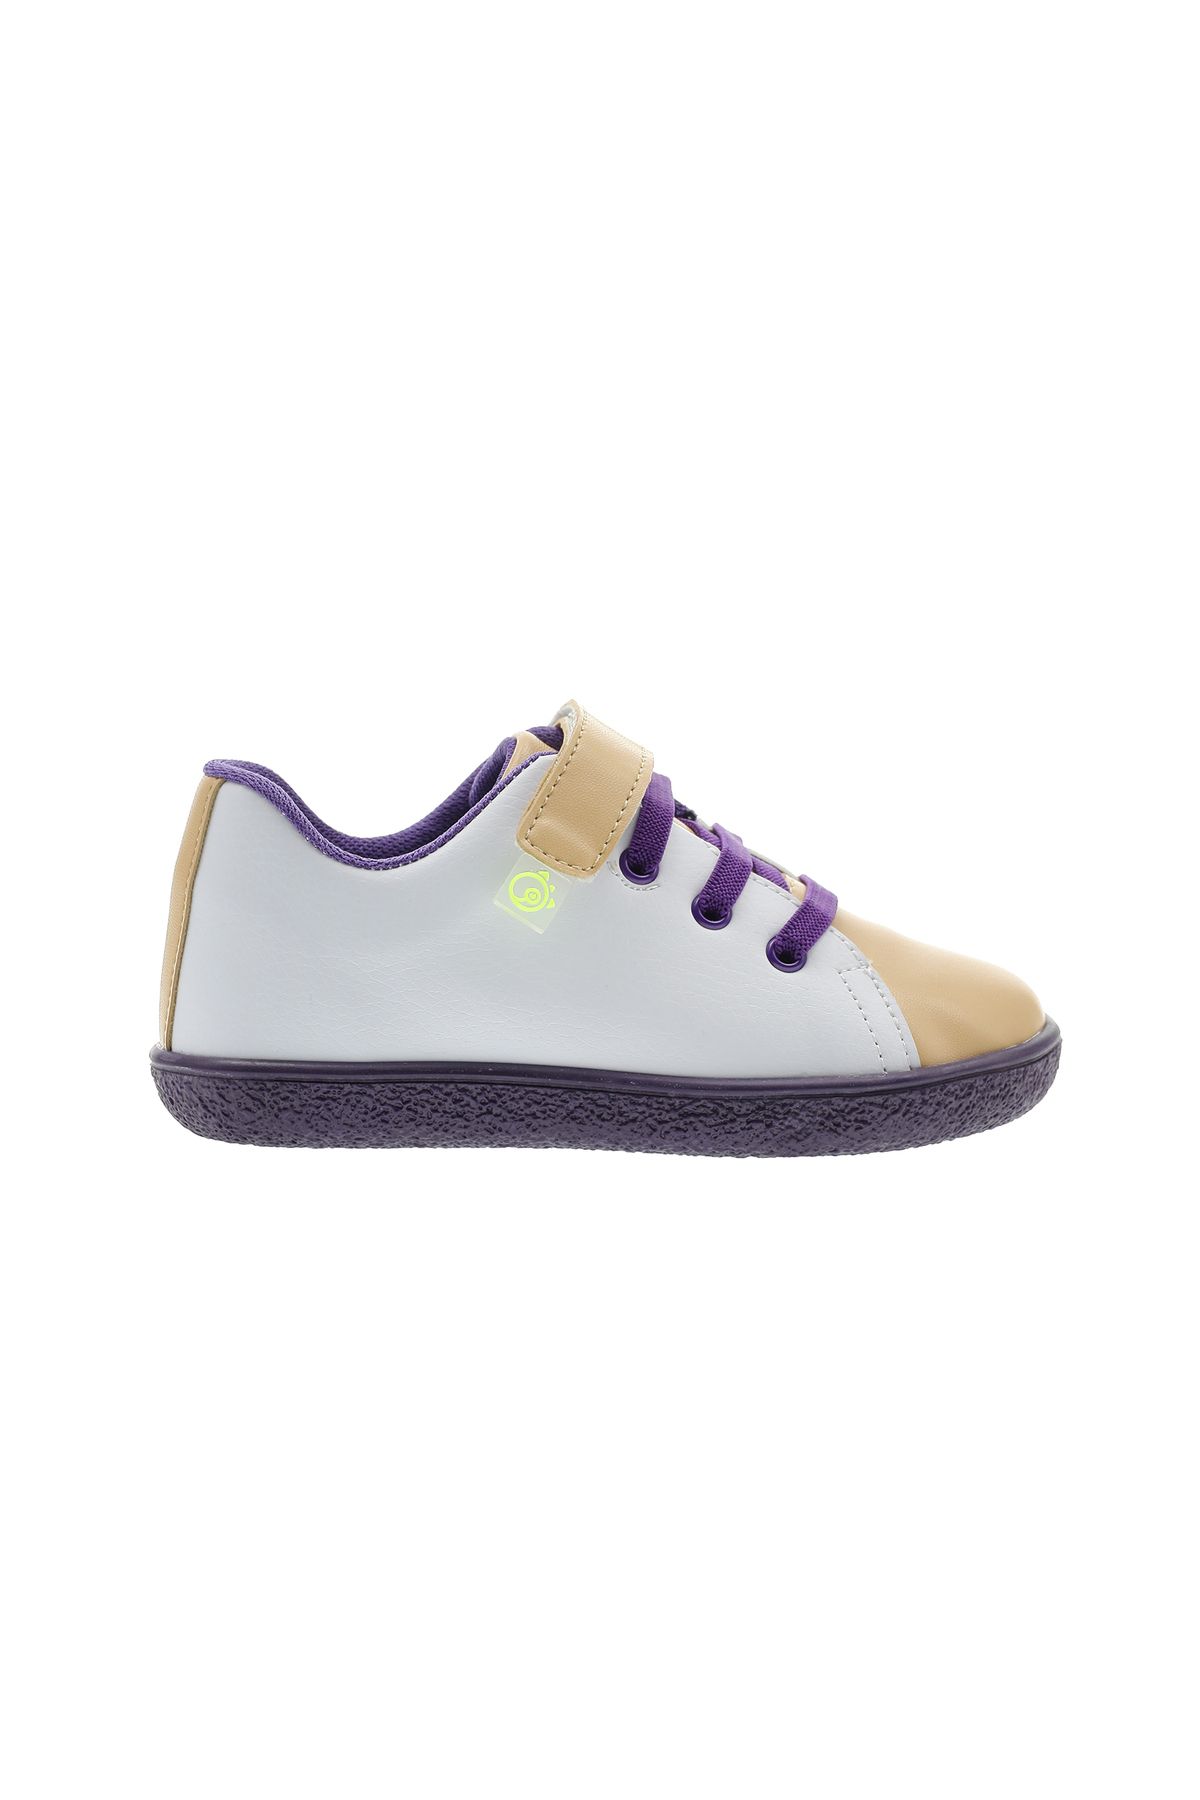 Panço Unisex Çocuk Renk Bloklu Cırt Cırtlı Bağcıklı Sneakers